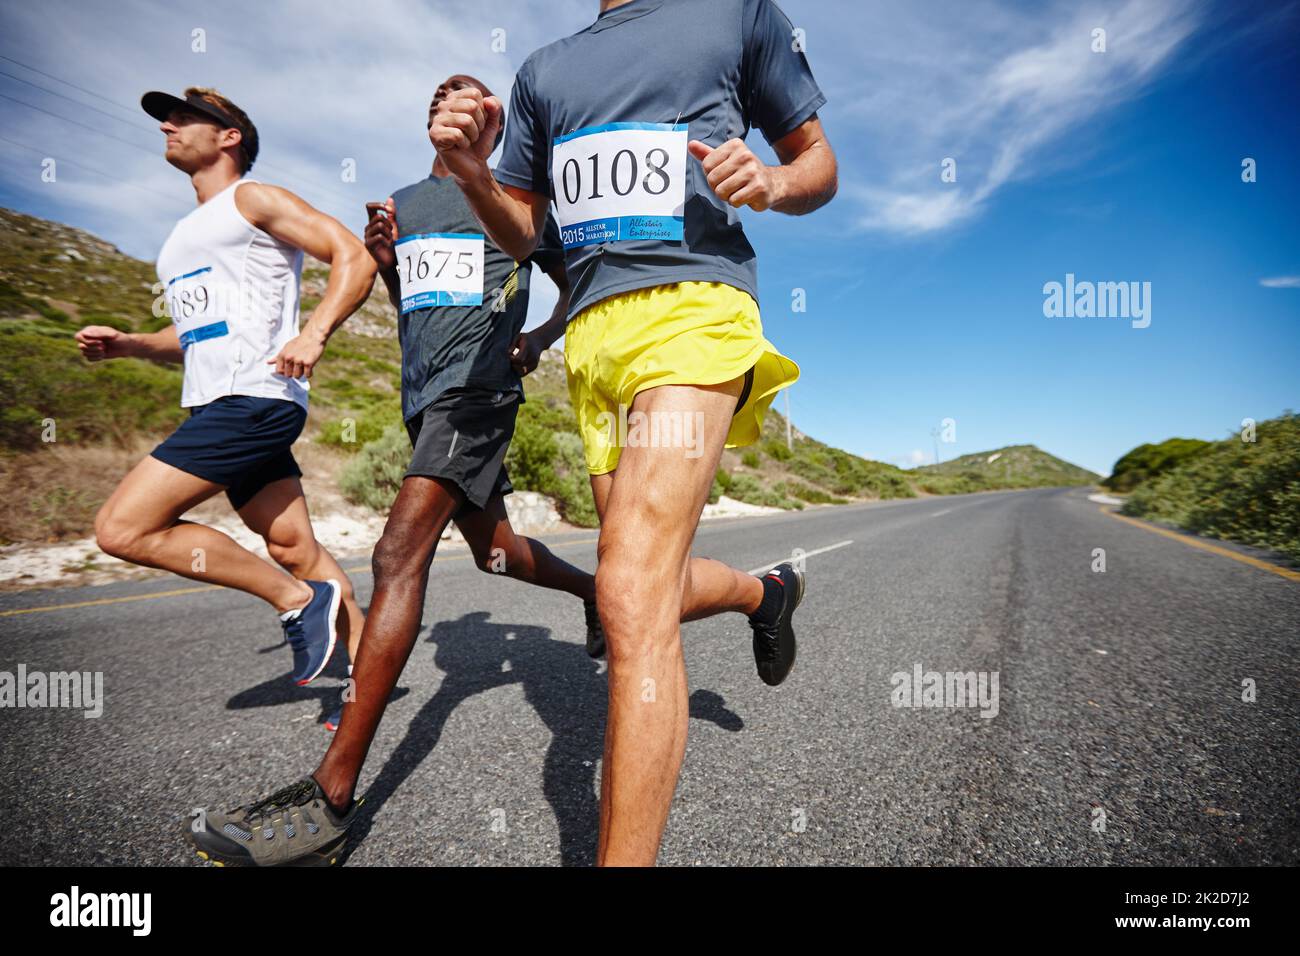 Competir con los mejores. Tiro de un grupo de hombres corriendo una carrera de carretera. Foto de stock